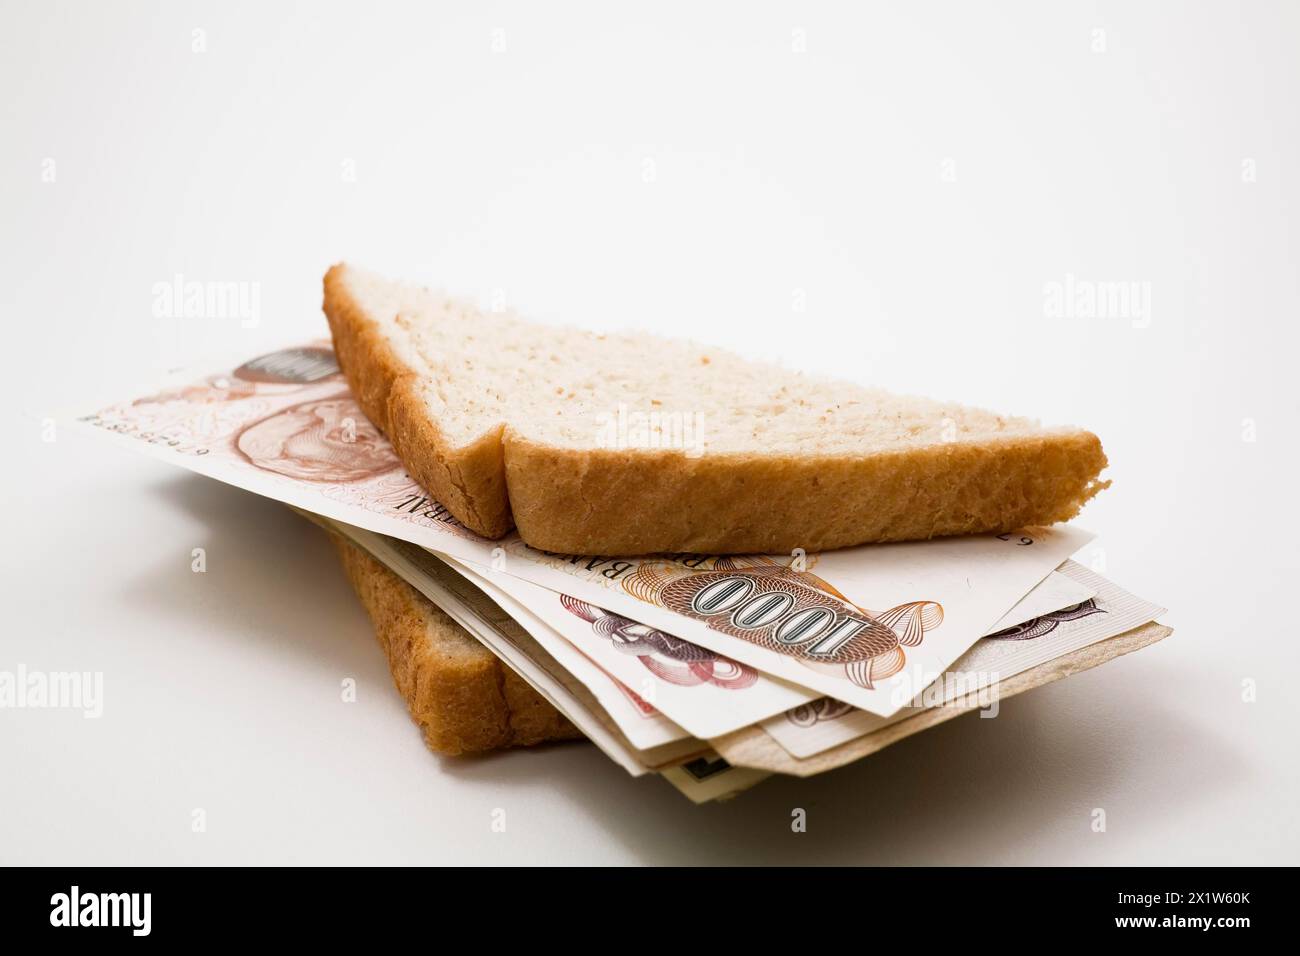 Primo piano di pane integrale mezzo sandwich ripieni di banconote in valuta estera su sfondo bianco, Studio Composition, Quebec, Canada Foto Stock